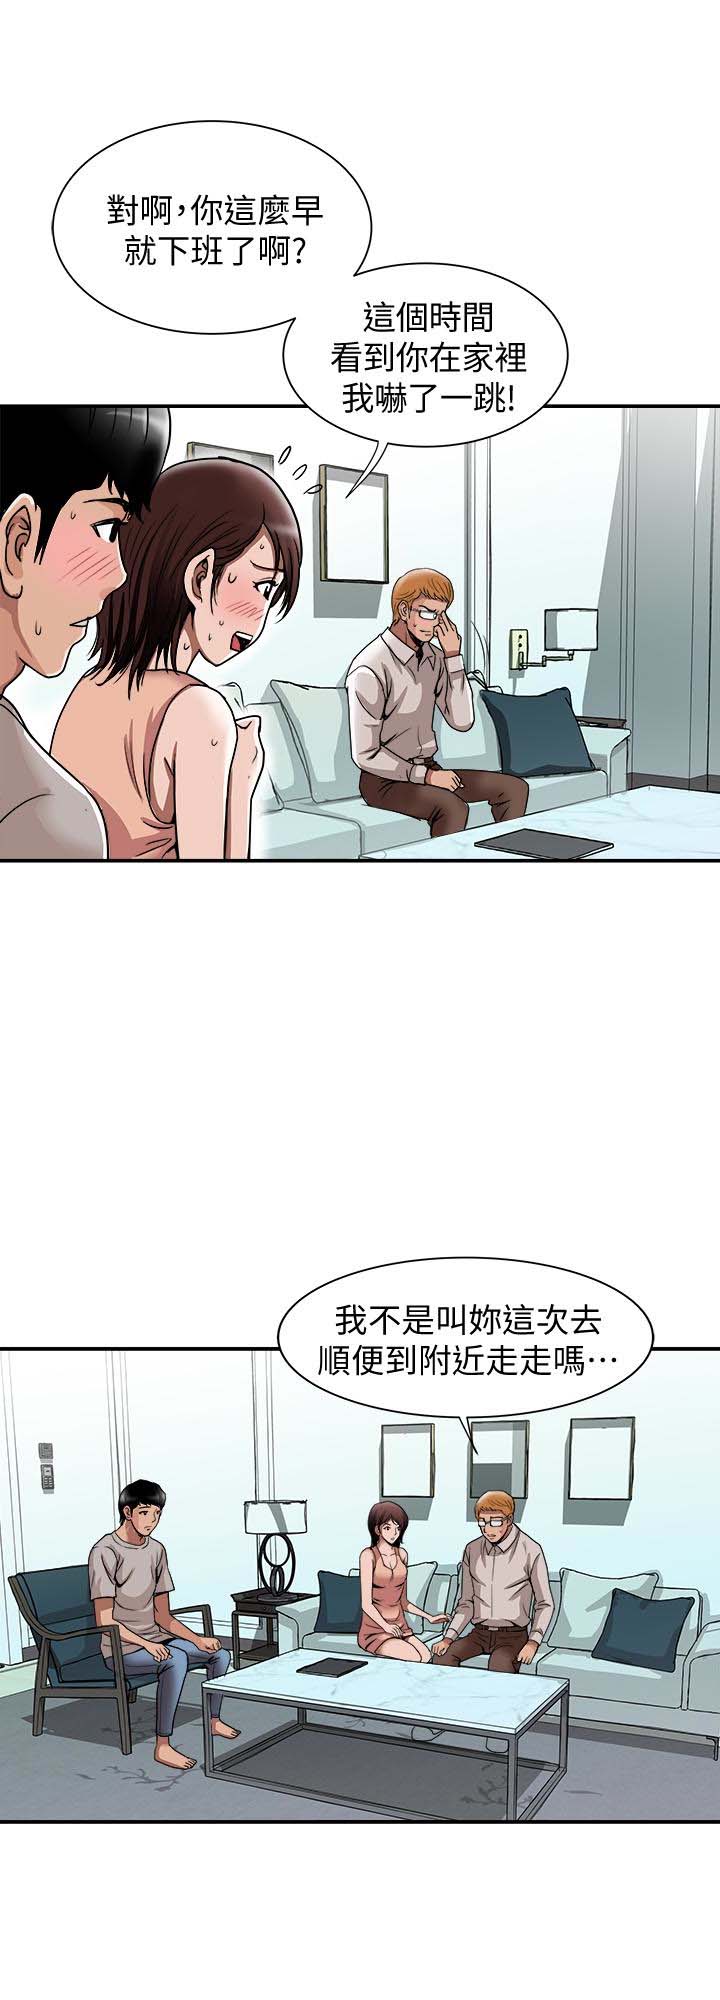 《别人的老婆》漫画 第42话(第2季)-斯文老公醋劲大发